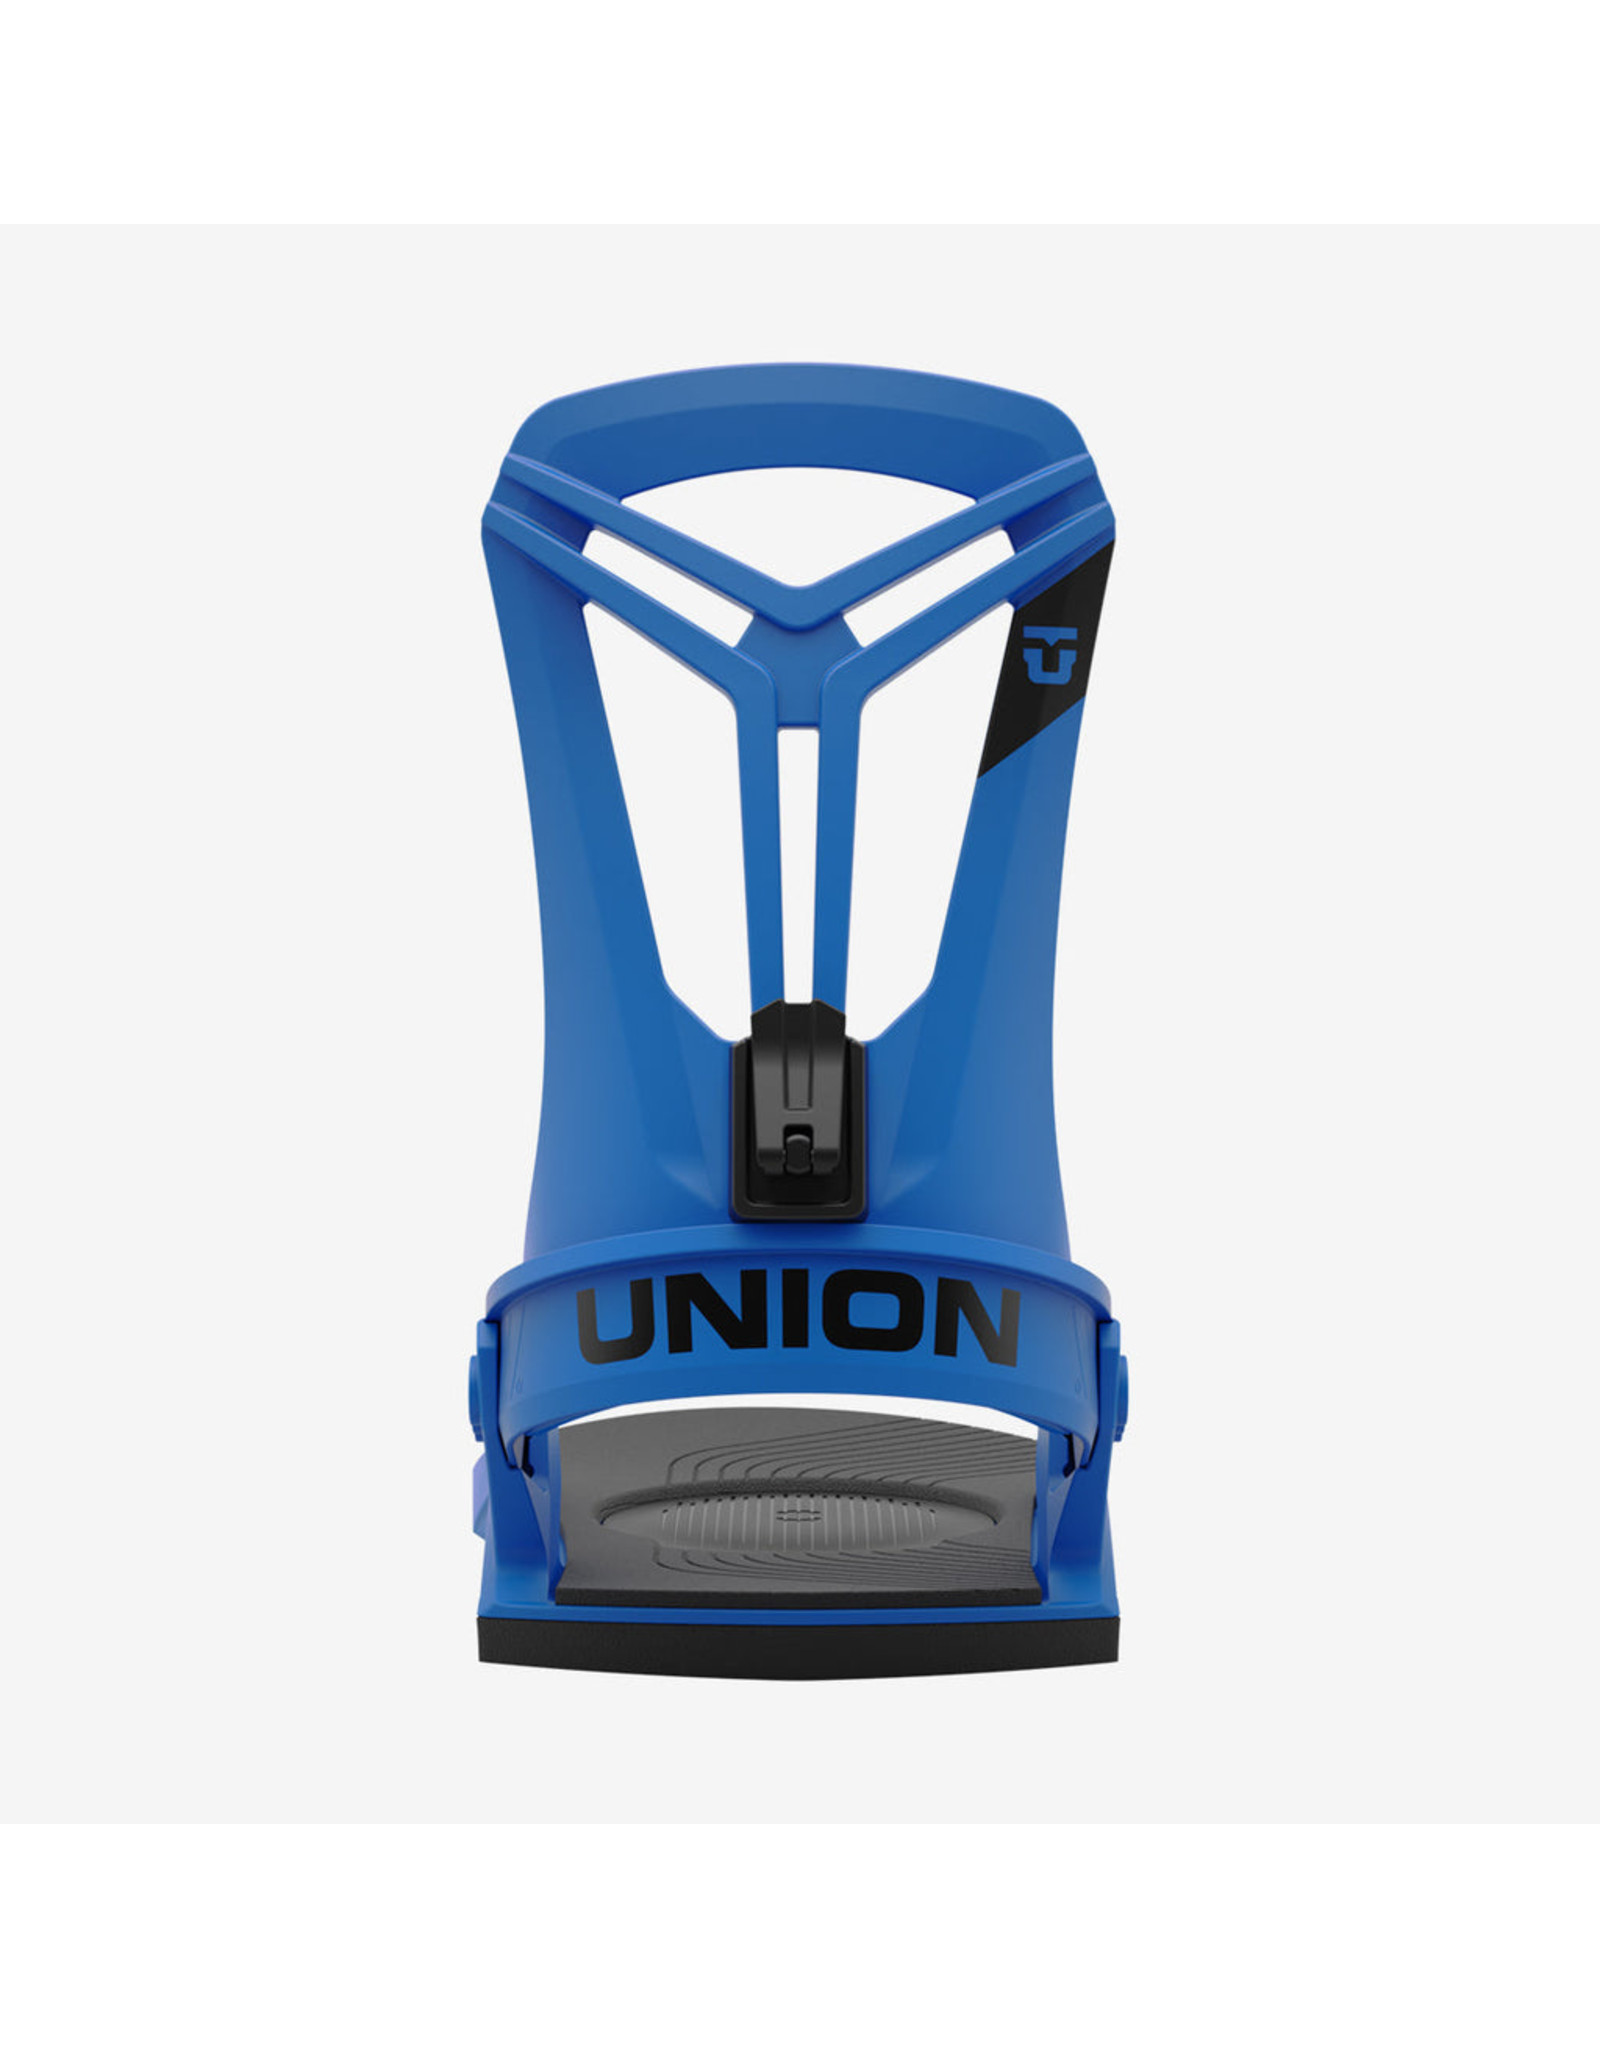 Union Flite Pro - Blue